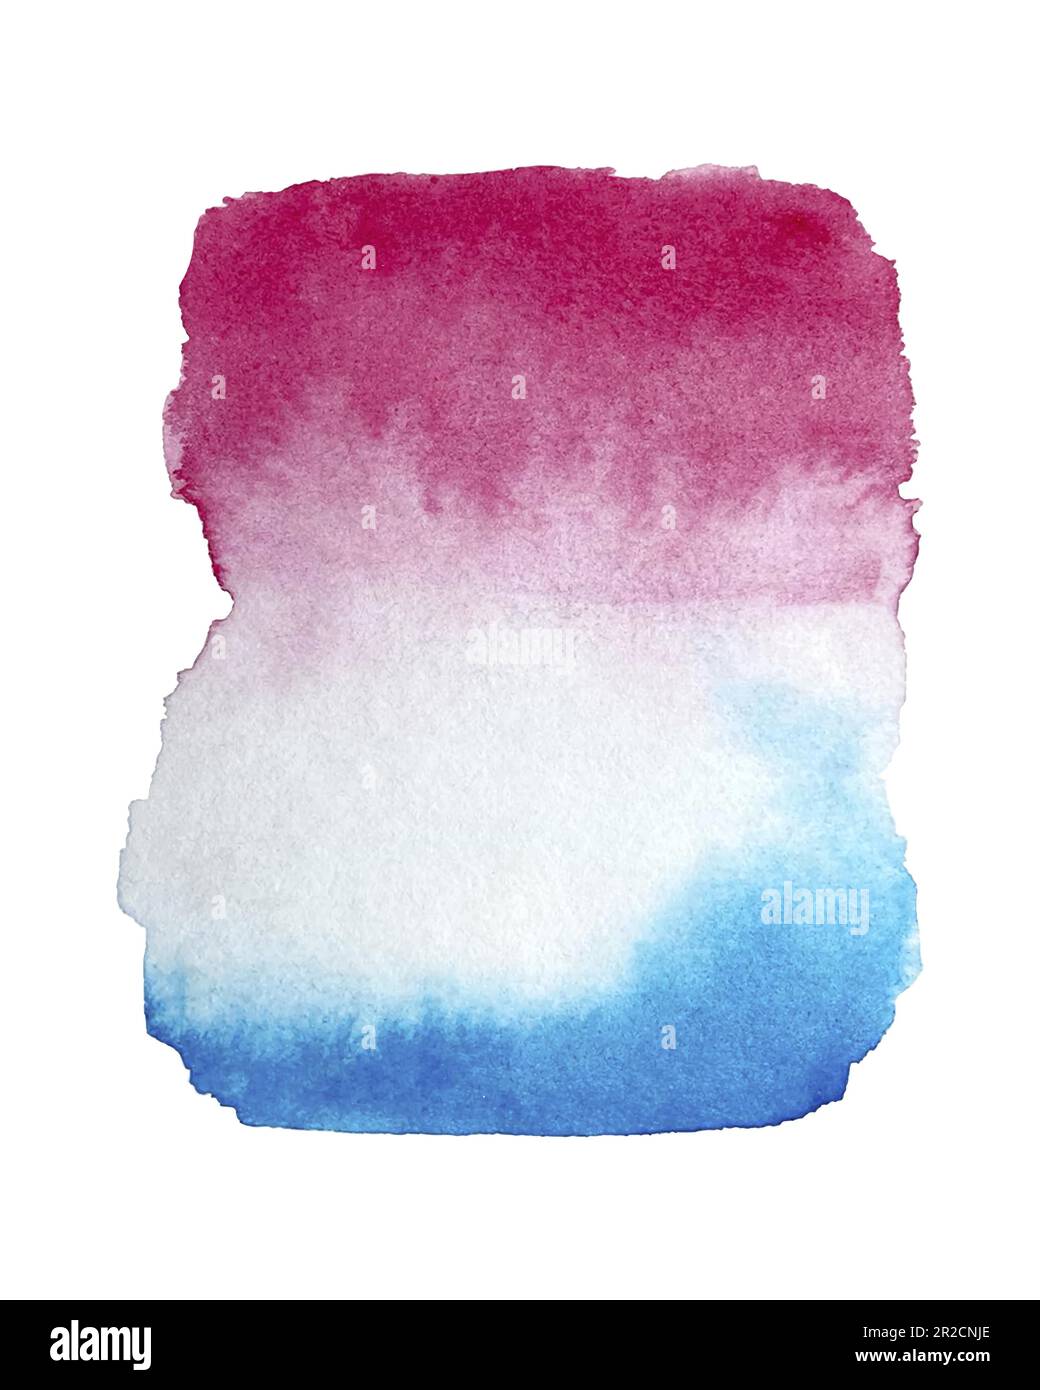 Acquerello mano pittura texture isolato su sfondo bianco, rosso e blu acquerello texture fondo. Illustrazione vettoriale Illustrazione Vettoriale